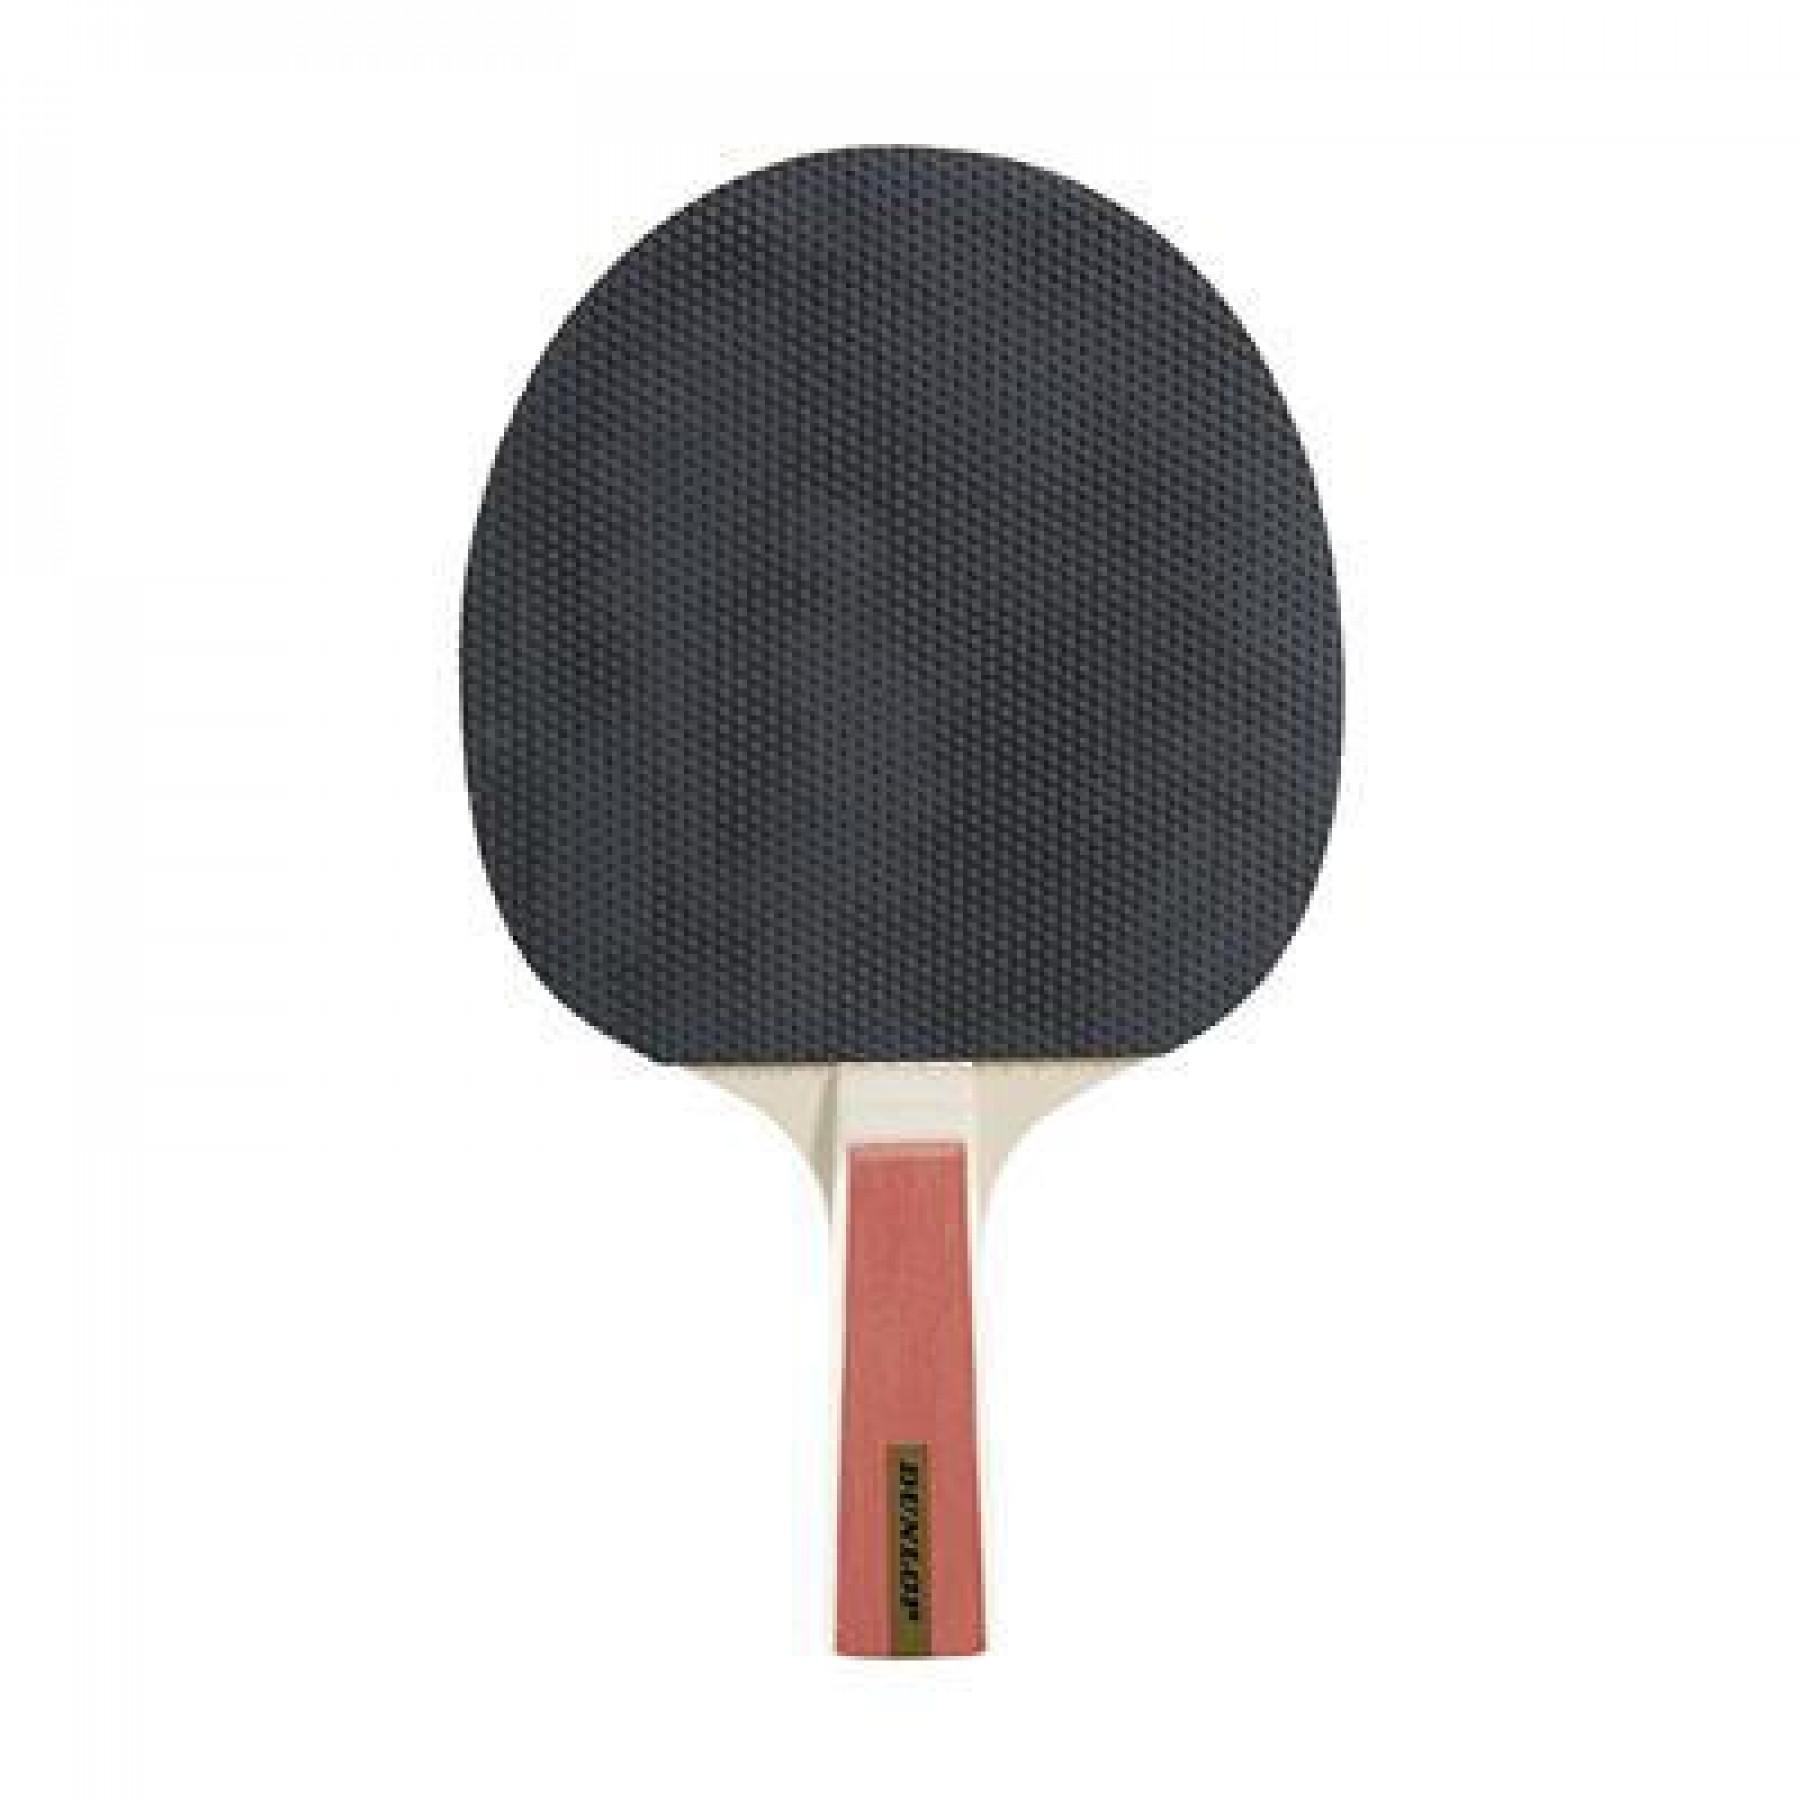 Racket Dunlop nitro